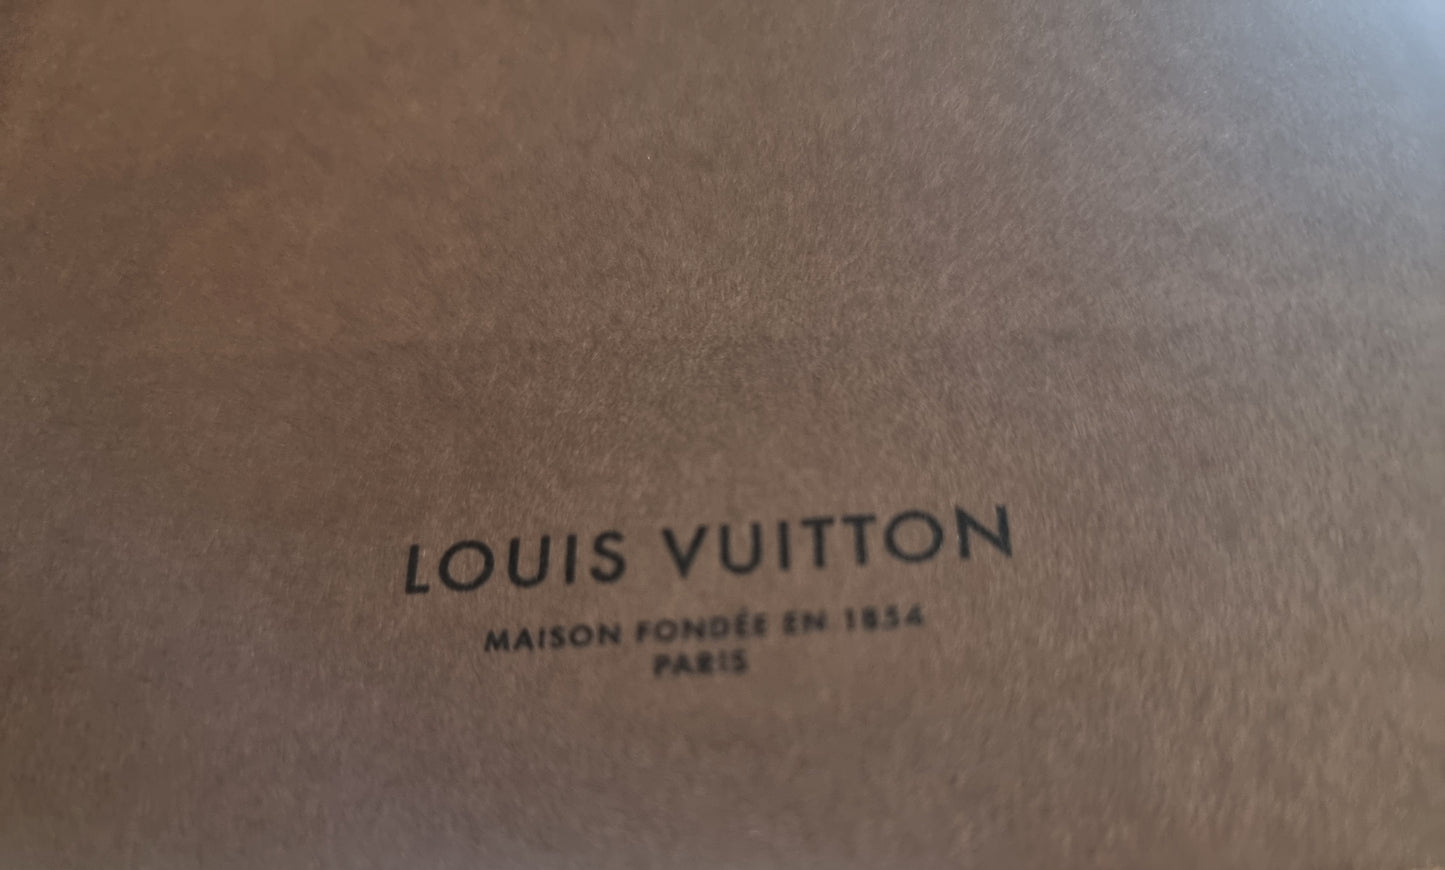 Louis Vuitton city guide book